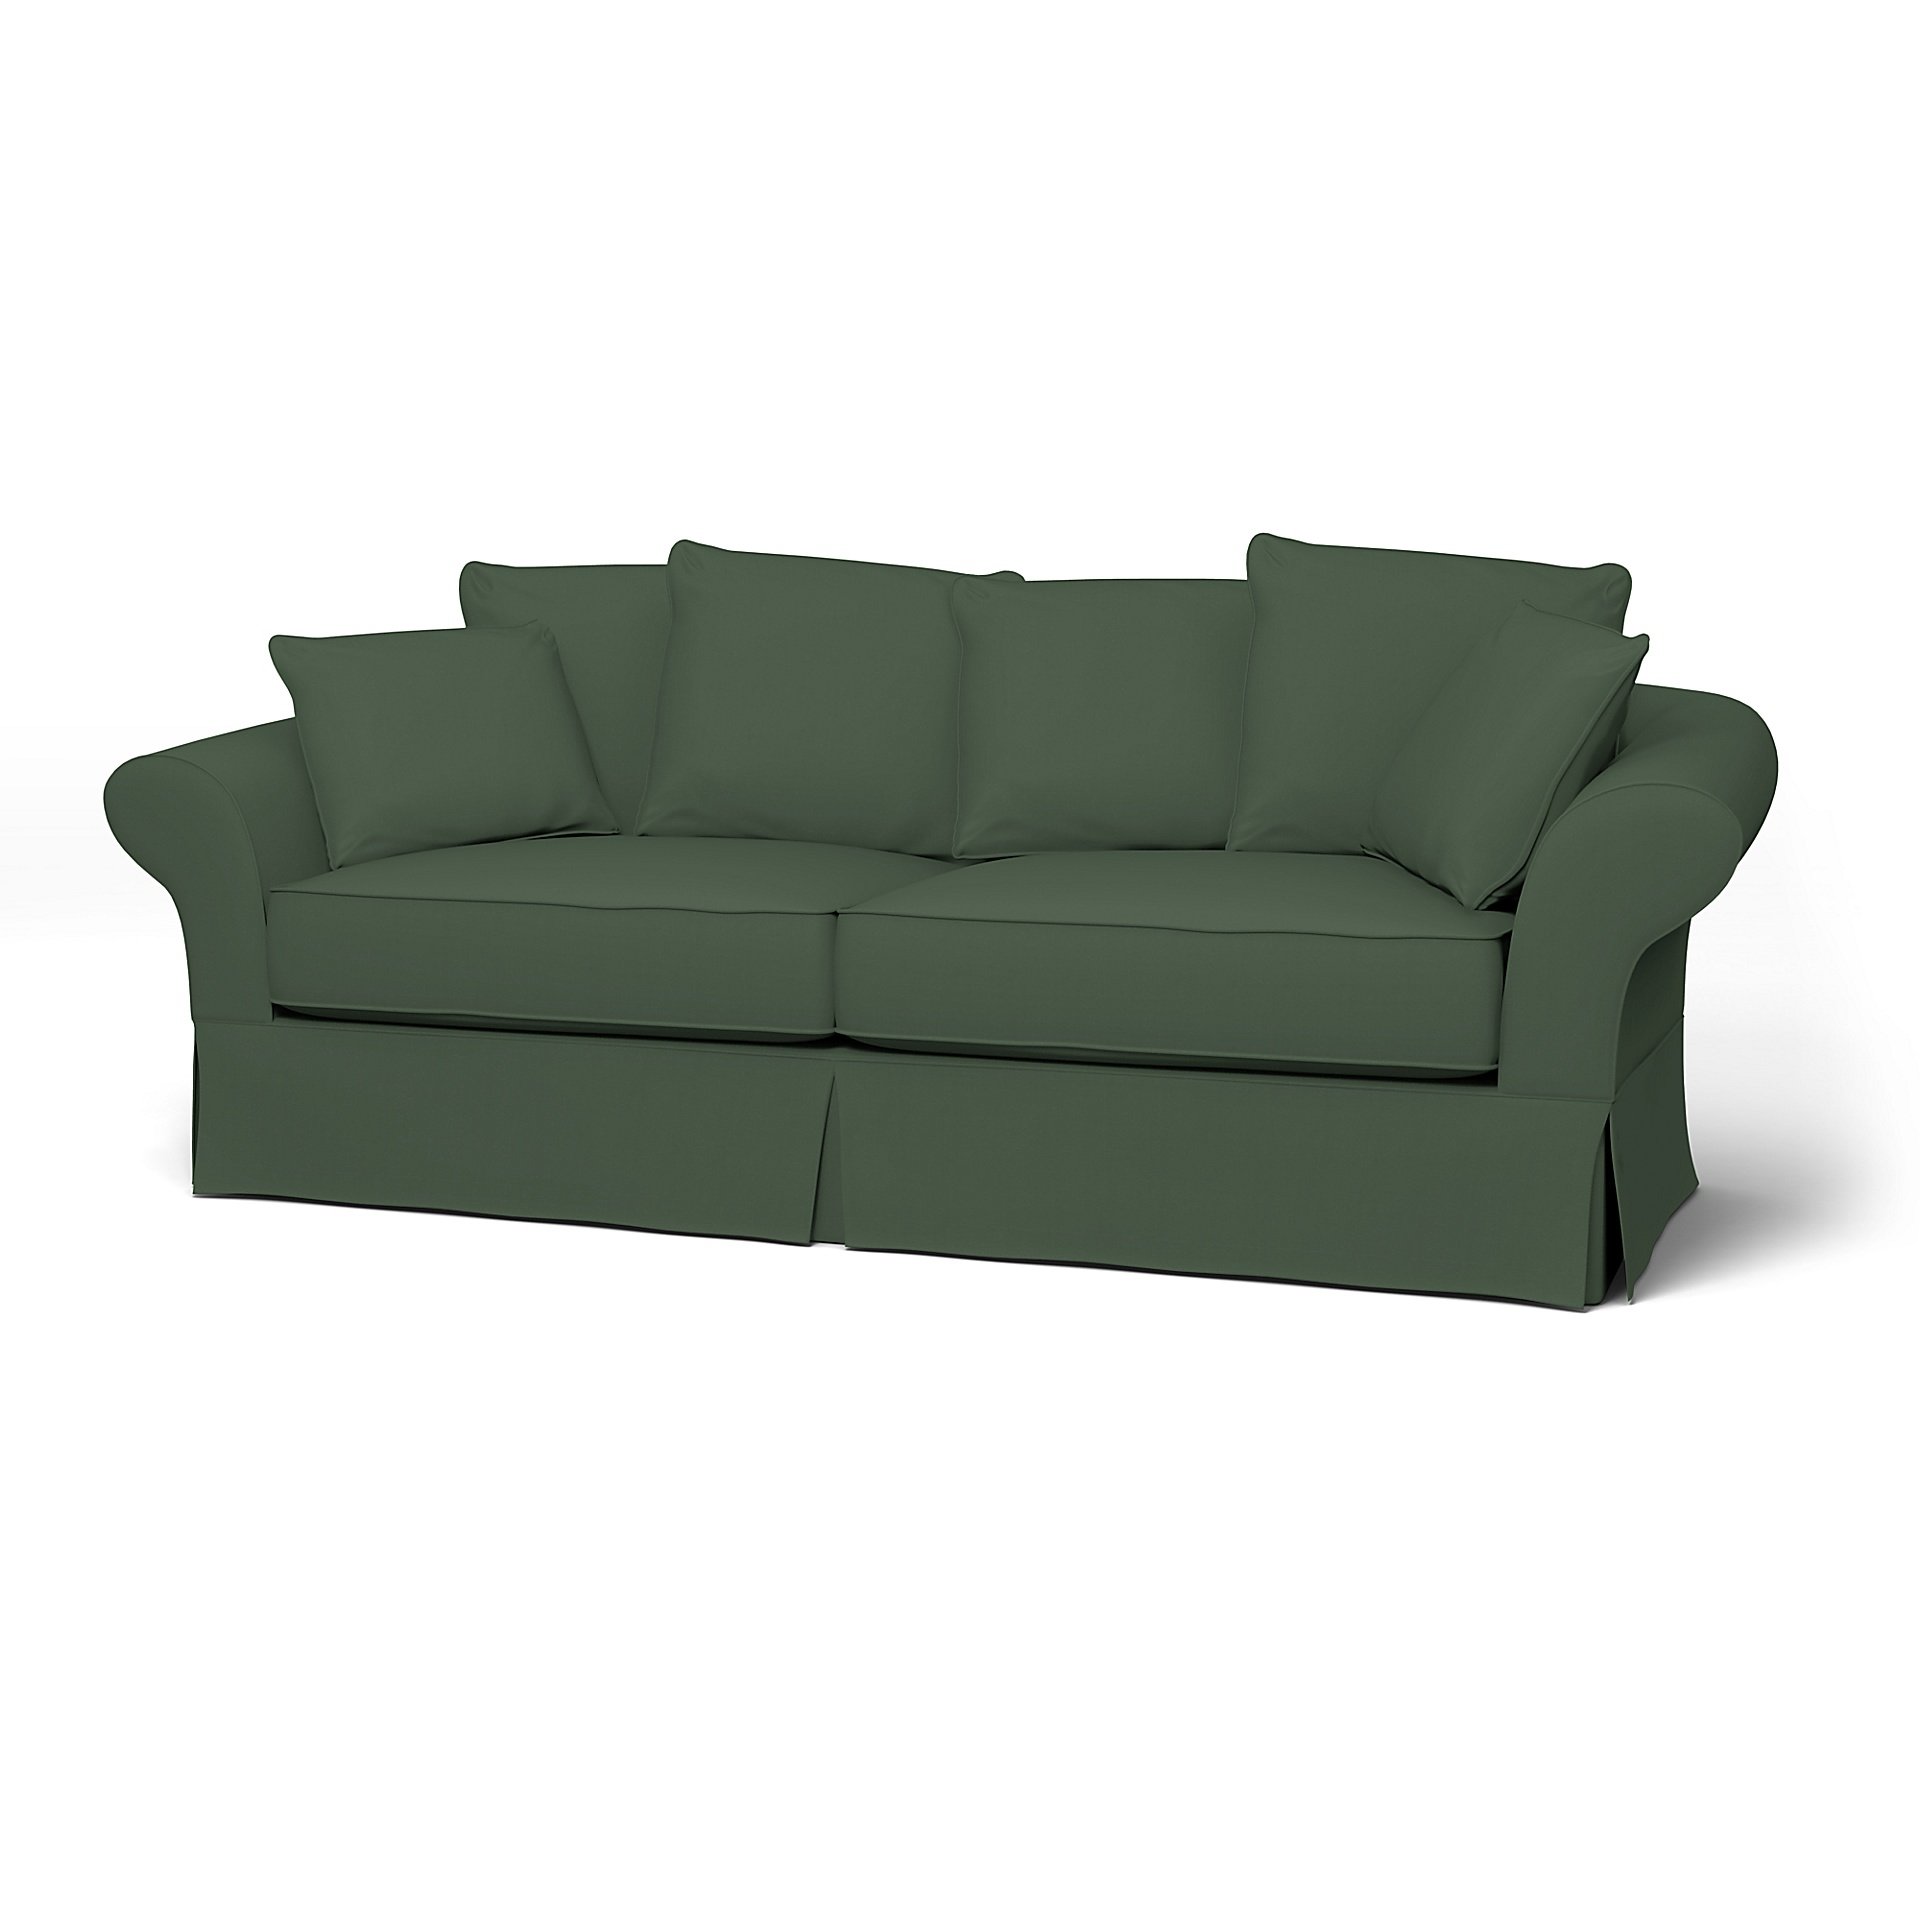 IKEA - Backamo 3 Seater Sofa Cover, Thyme, Cotton - Bemz